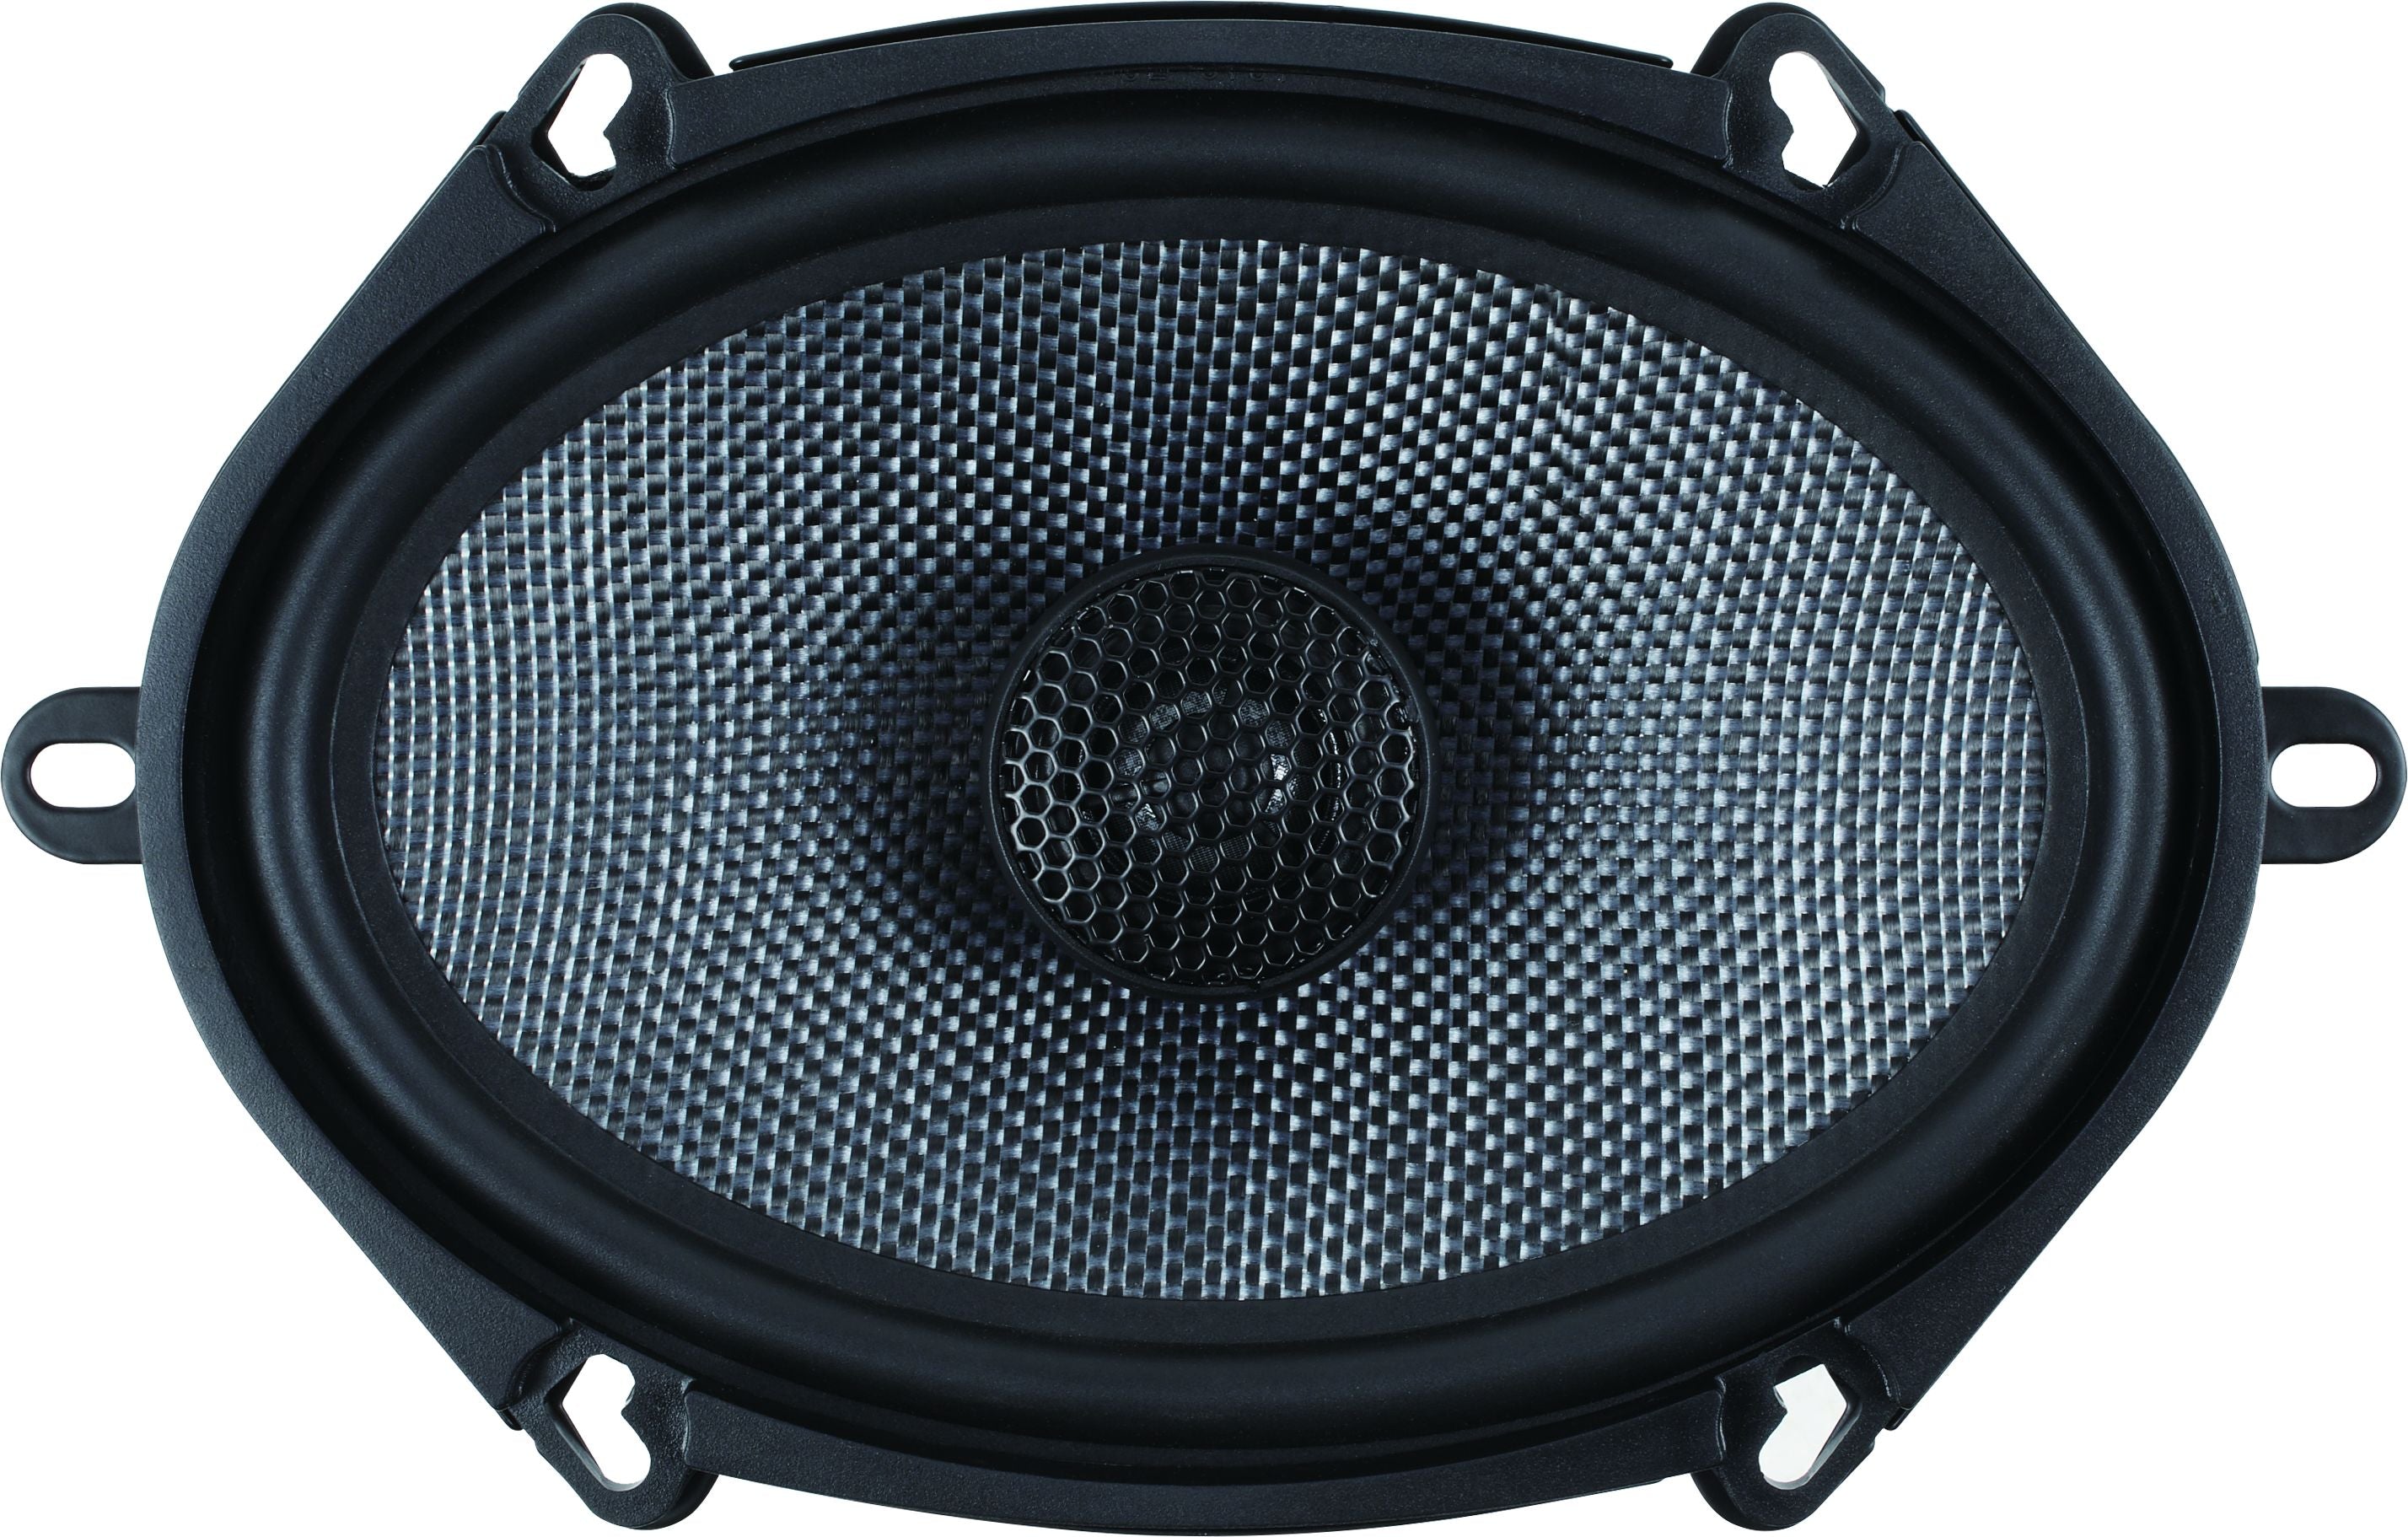 ATG ATG-TS572 - ATG Audio Transcend Series 5x7" Coaxial Speaker